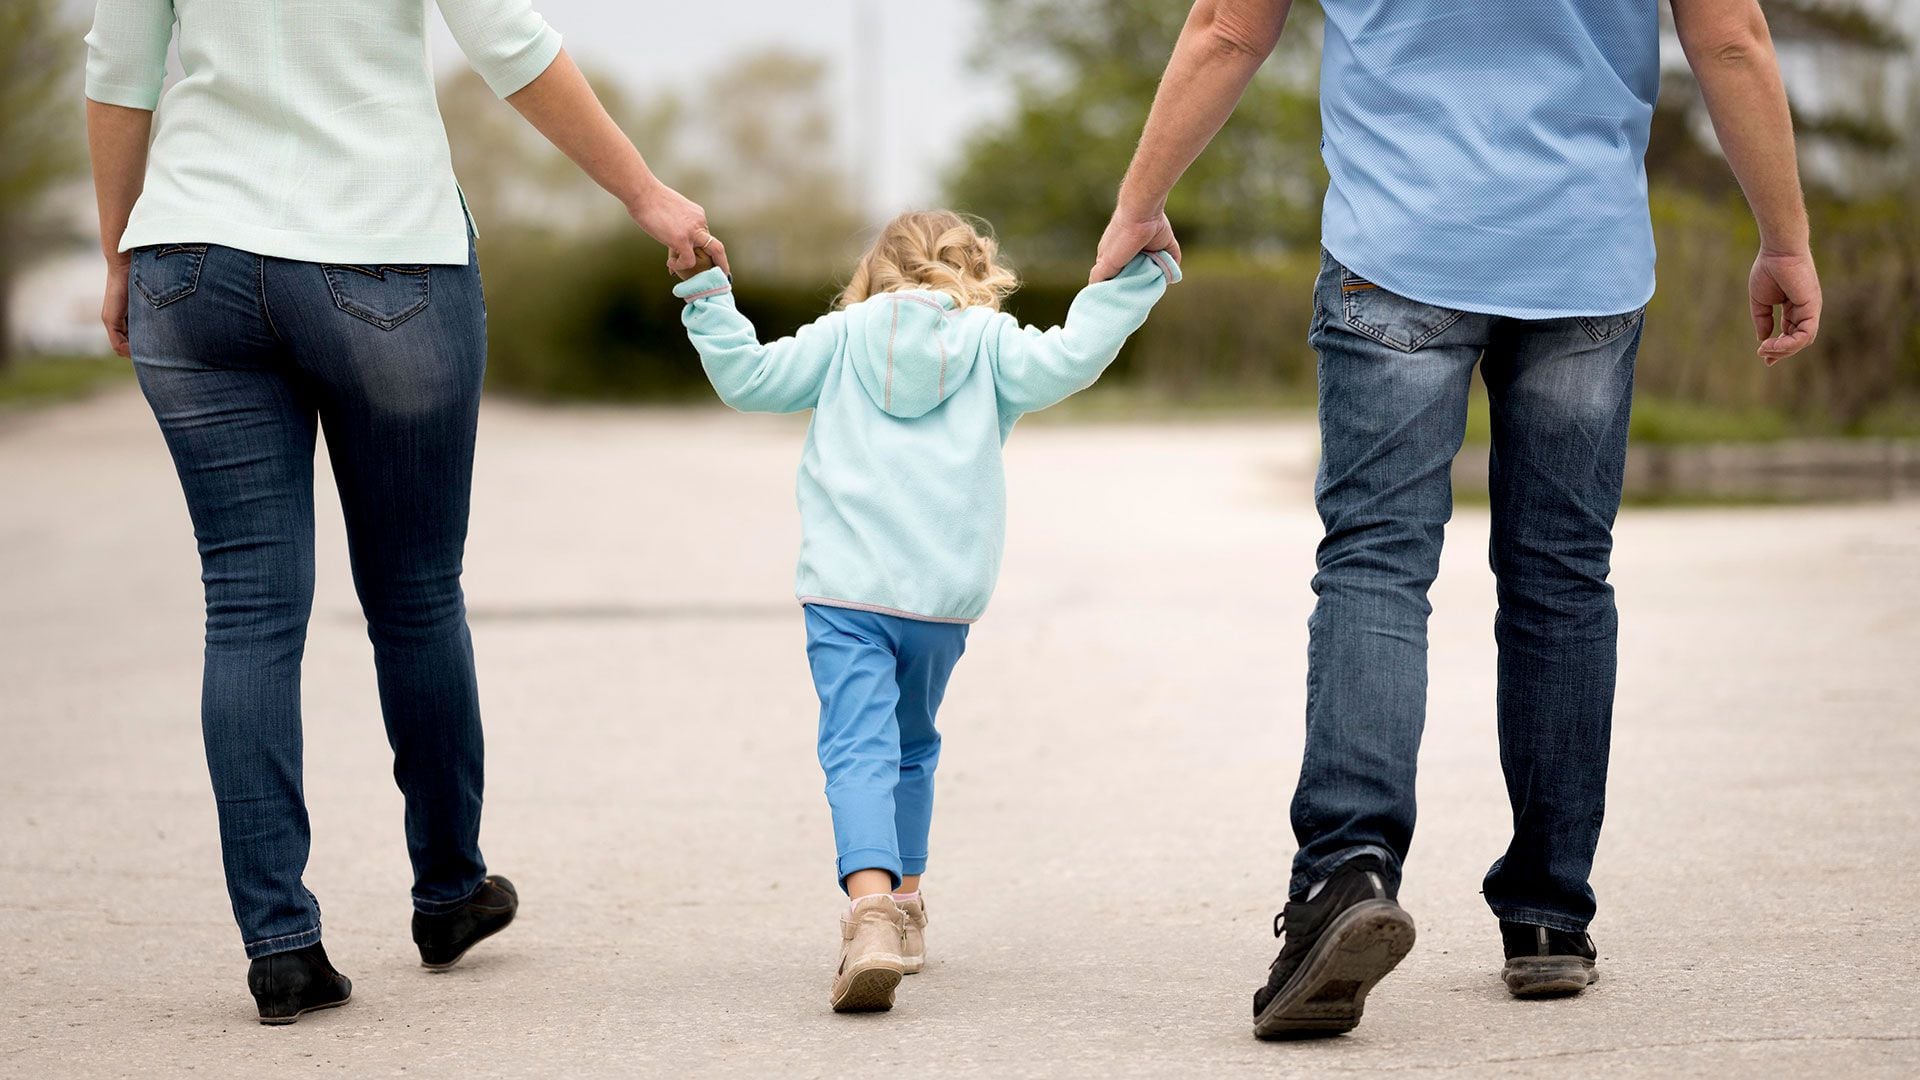 Los investigadores analizaron la influencia parental en el desarrollo de habilidades sociales en niños (Freepik)